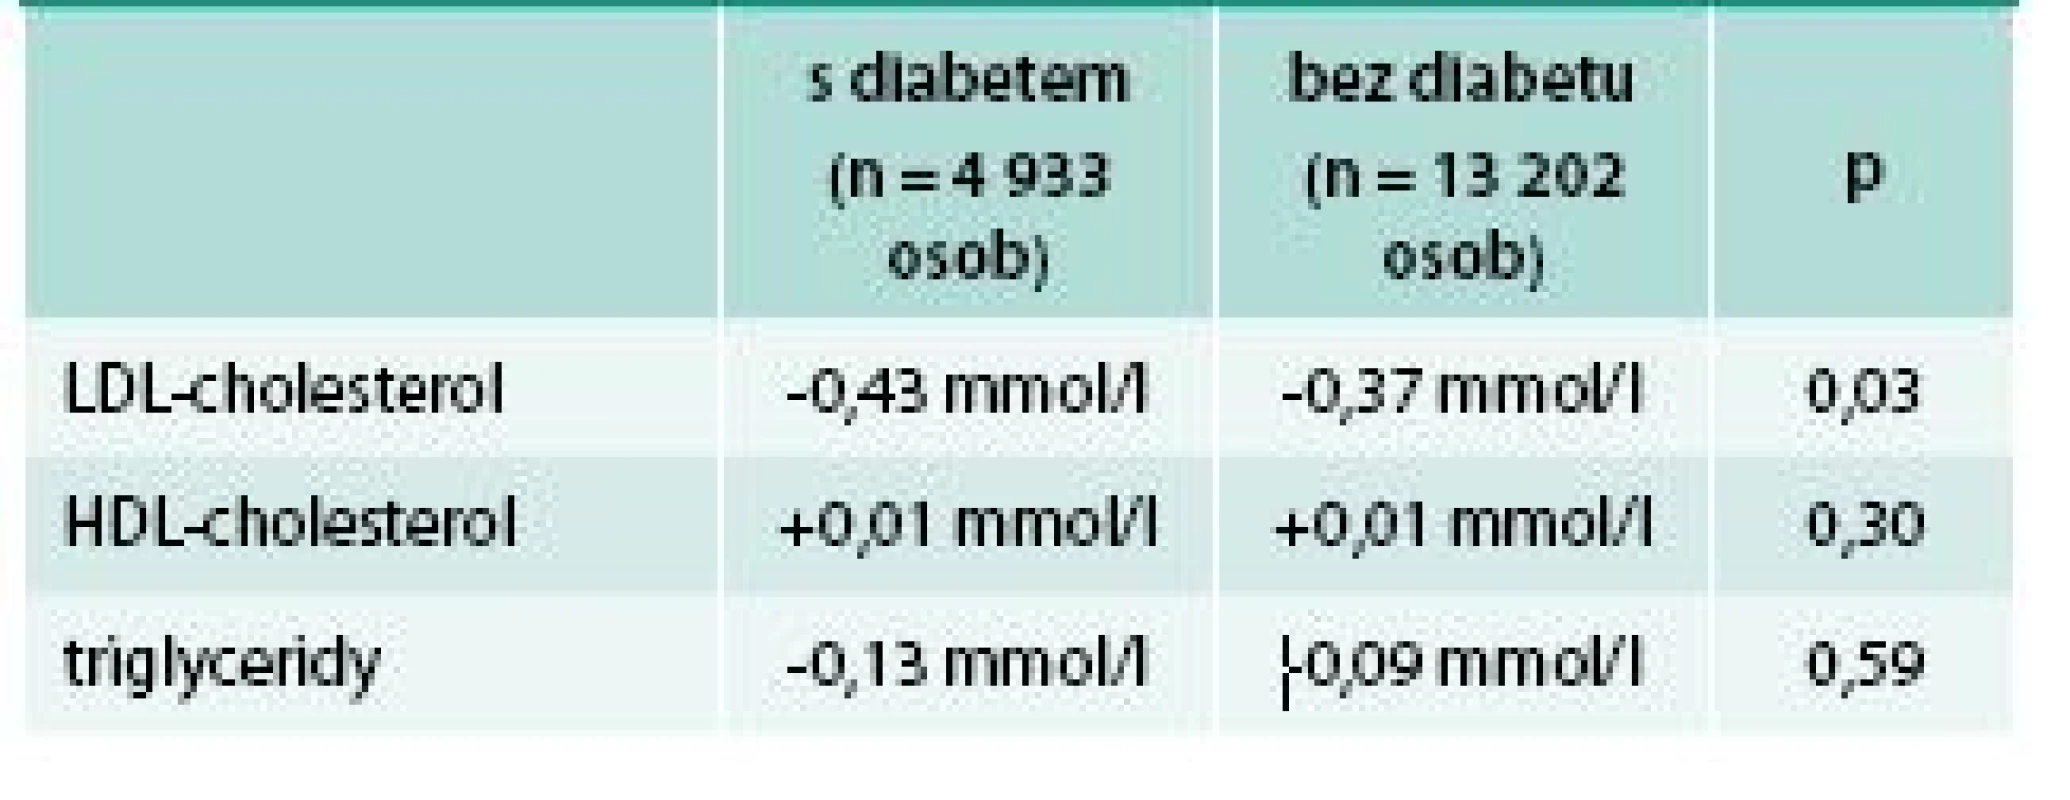 Změna krevních lipidů při léčbě kombinací simvastatin 40 mg + ezetimib (po adjustaci na placebo): pacienti s diabetem a pacienti bez diabetu